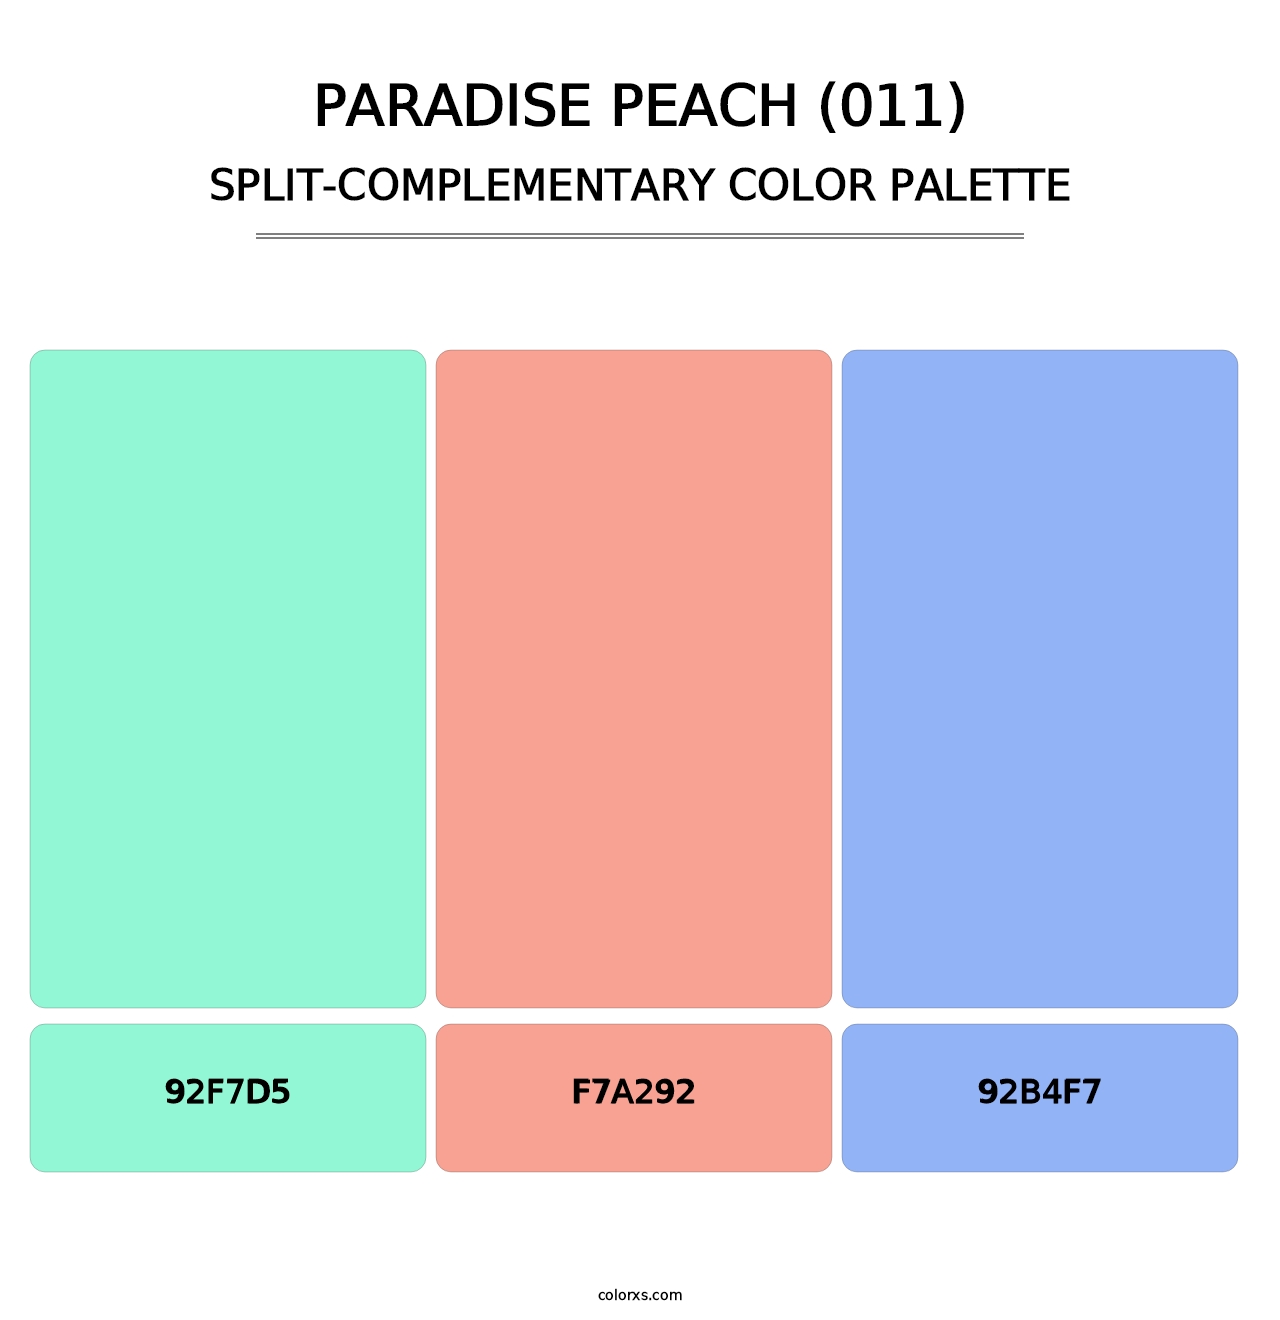 Paradise Peach (011) - Split-Complementary Color Palette